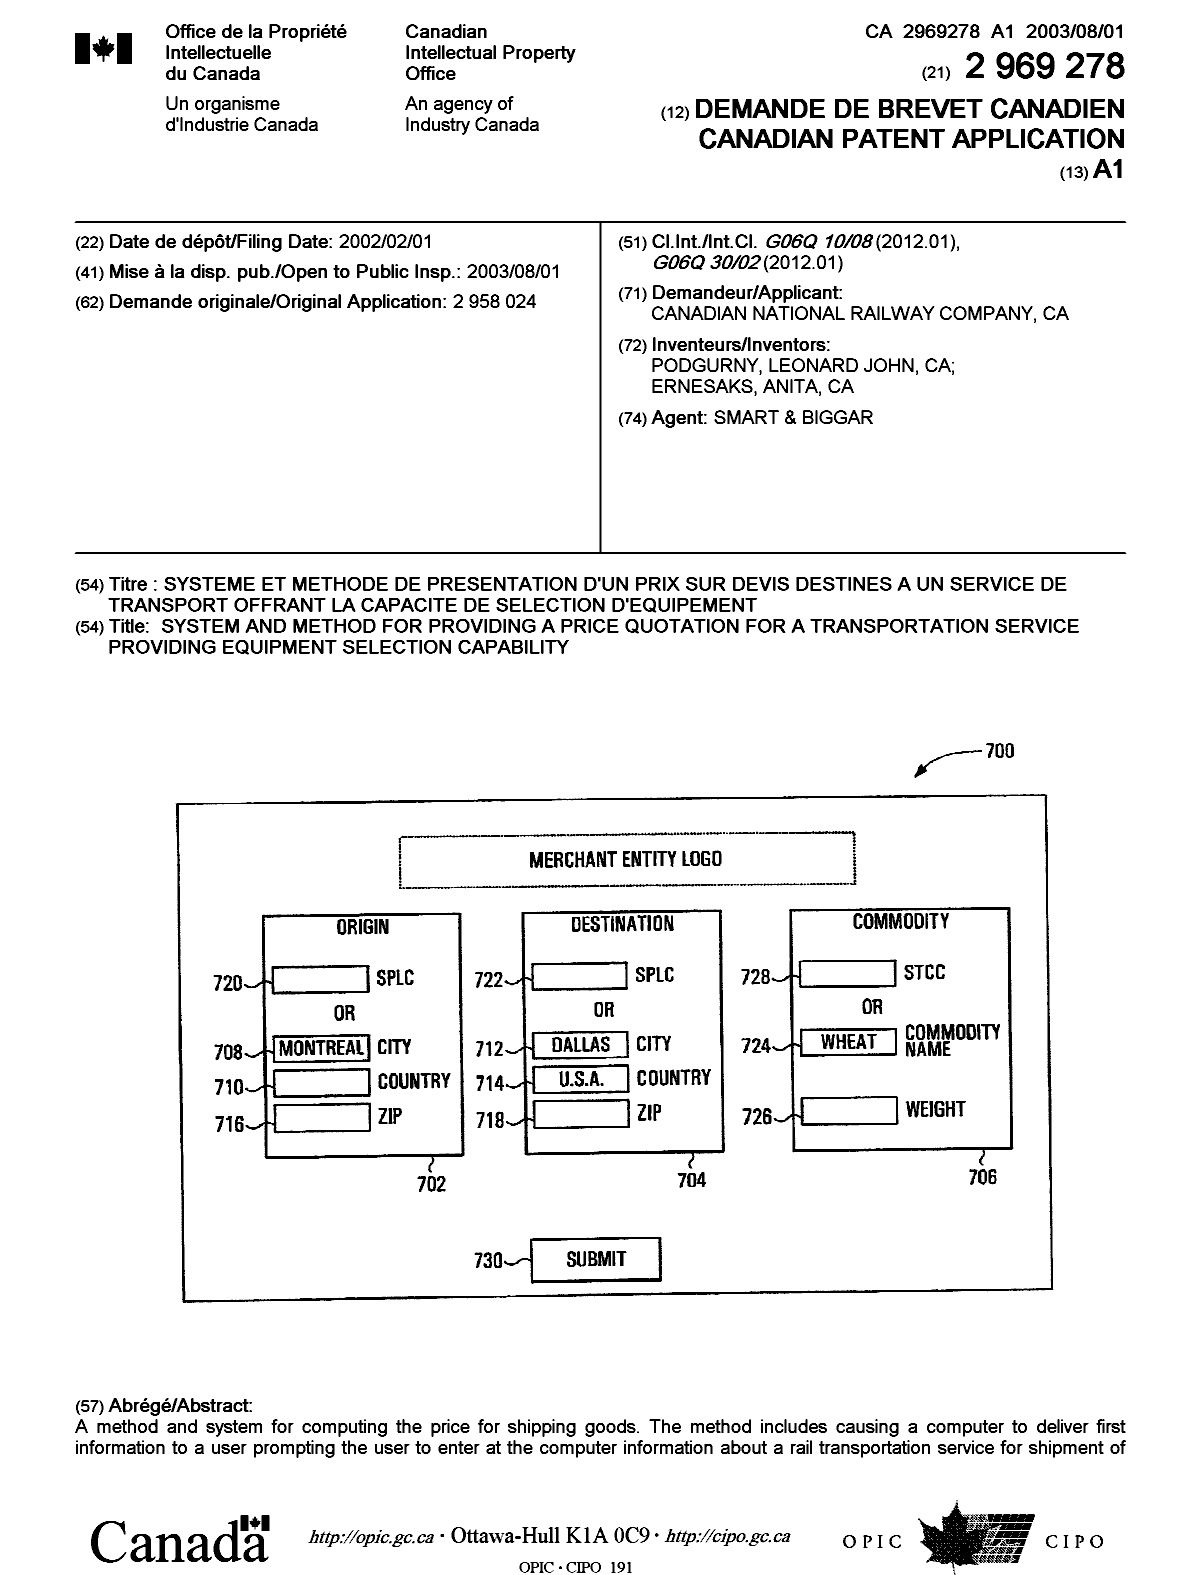 Document de brevet canadien 2969278. Page couverture 20170726. Image 1 de 2